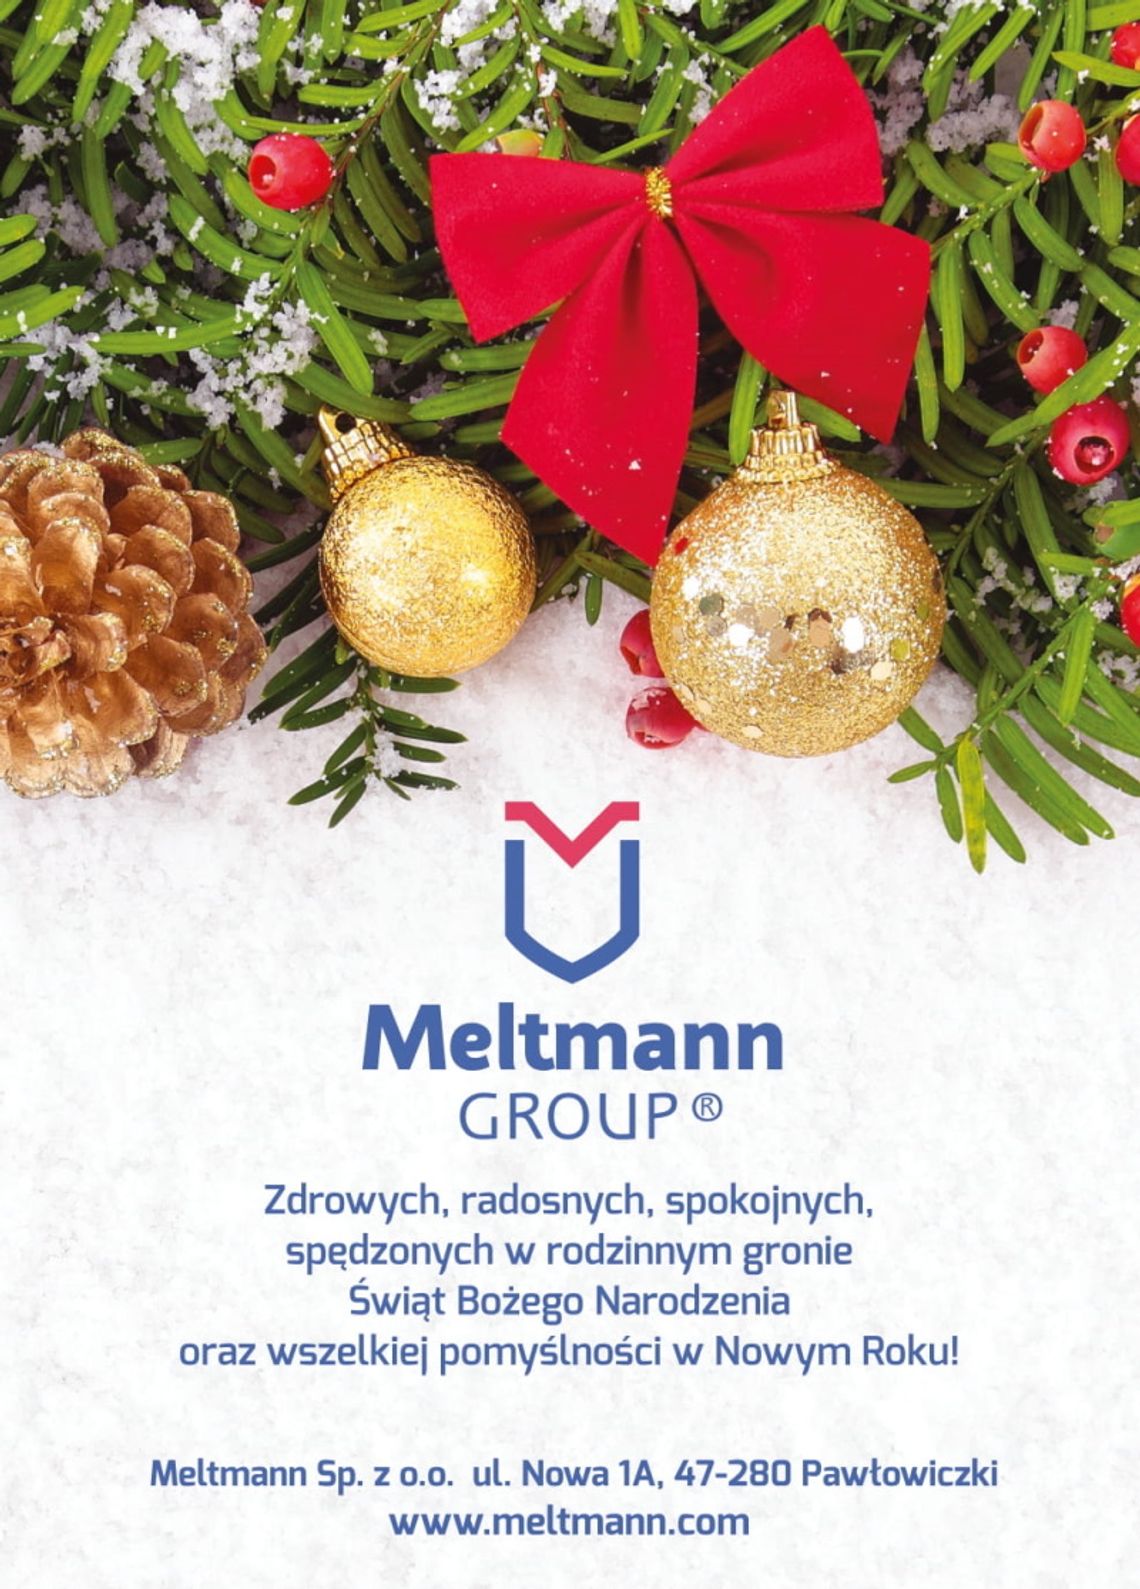 Życzenia bożonarodzeniowe i noworoczne firmy Meltmann Sp. z o.o. dla Czytelników KK24.pl